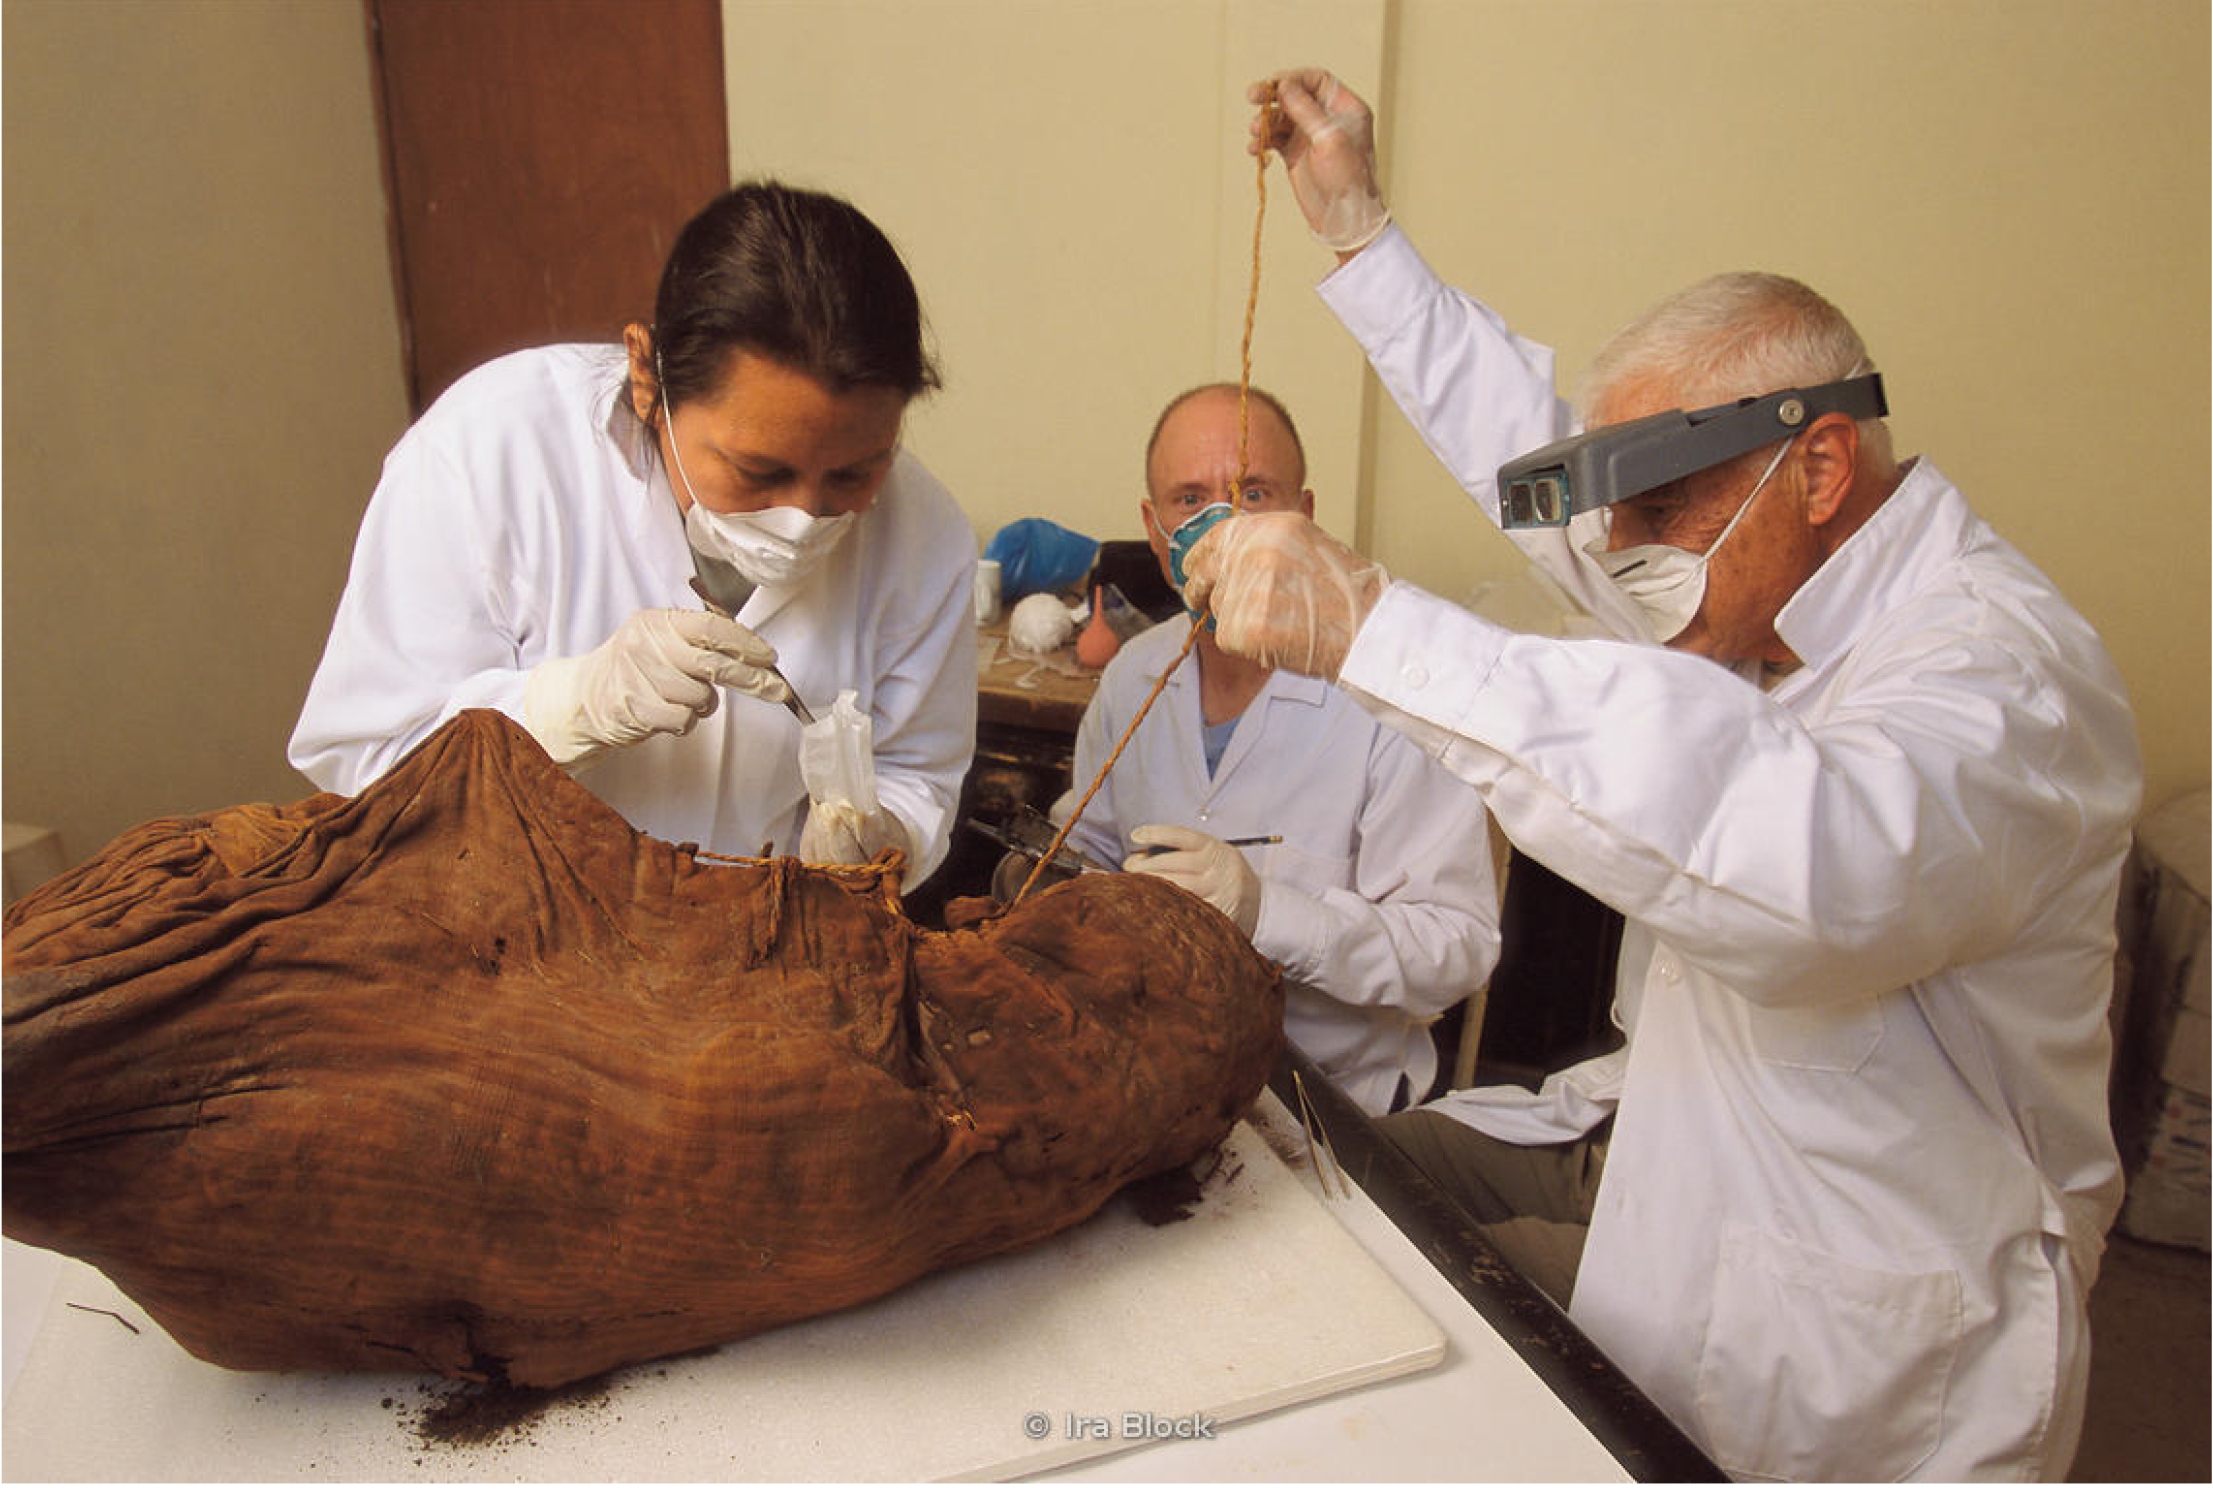 drie archeologen onderzoeken een mummie, gekleed in witte jassen en latex handschoenen